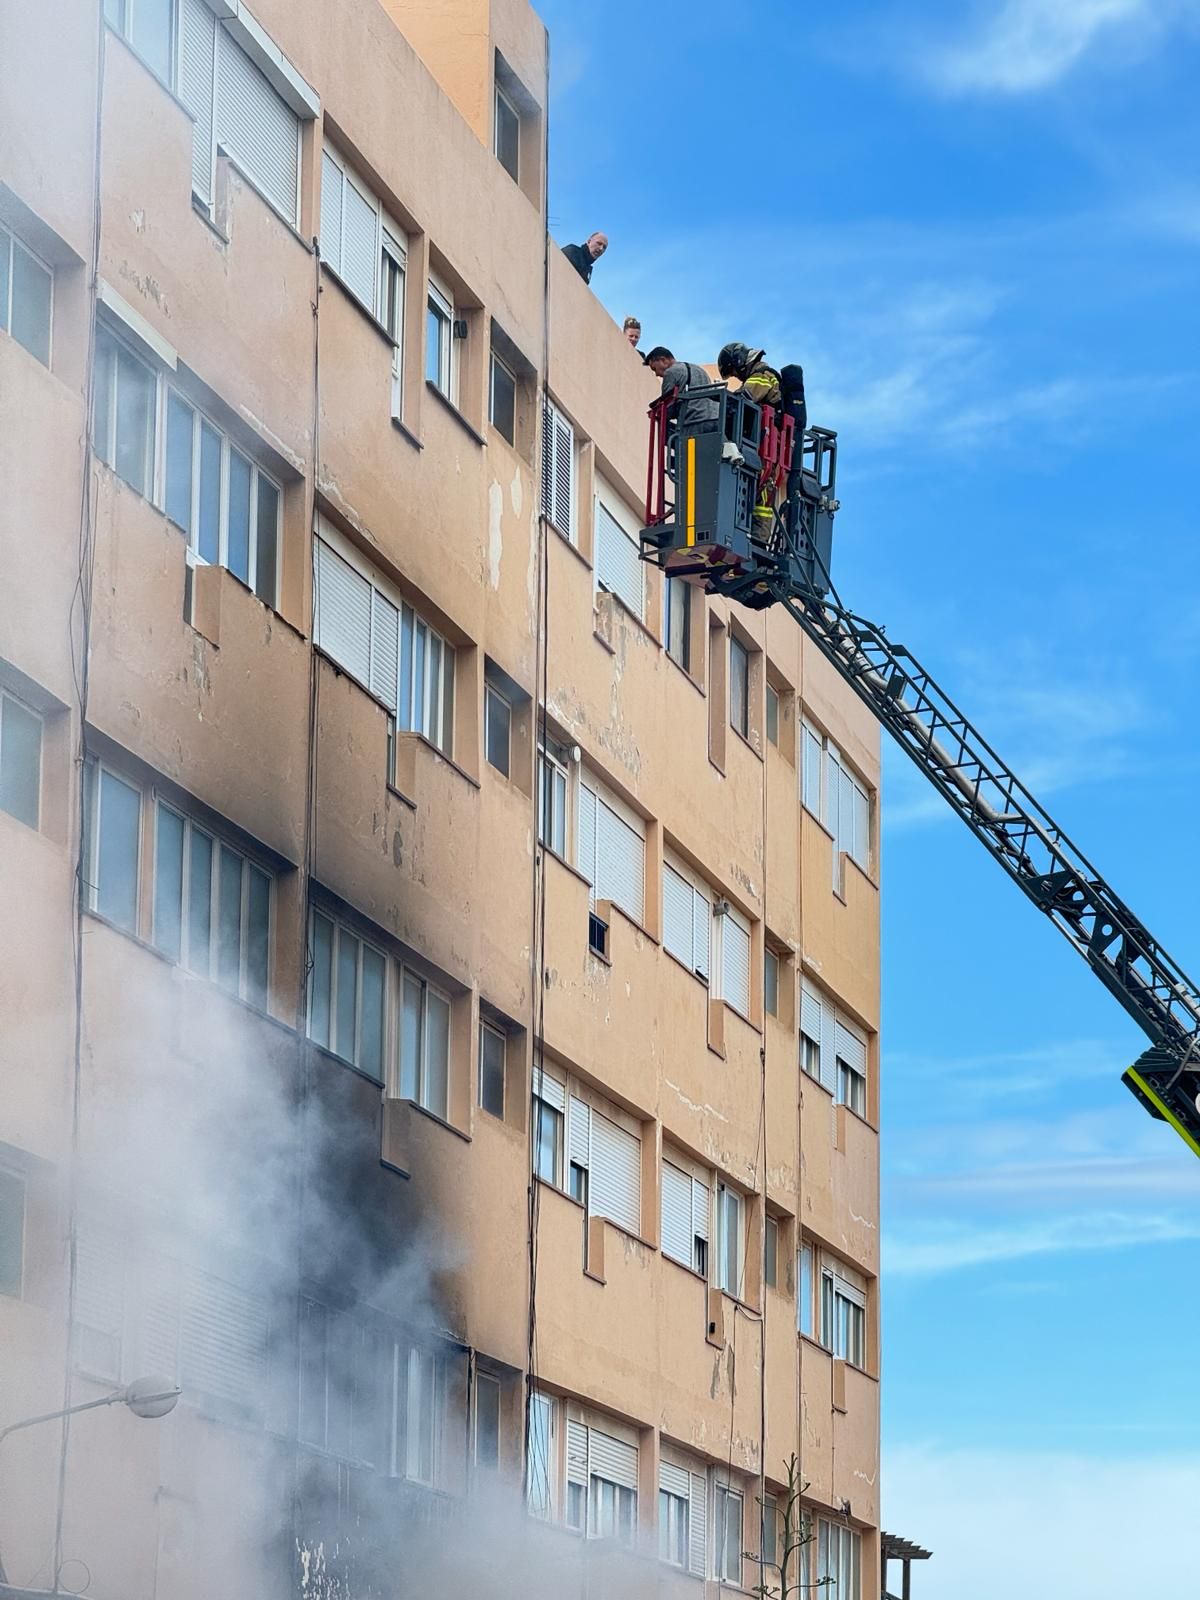 Las imágenes del incendio en los apartamentos Don Pepe de Ibiza